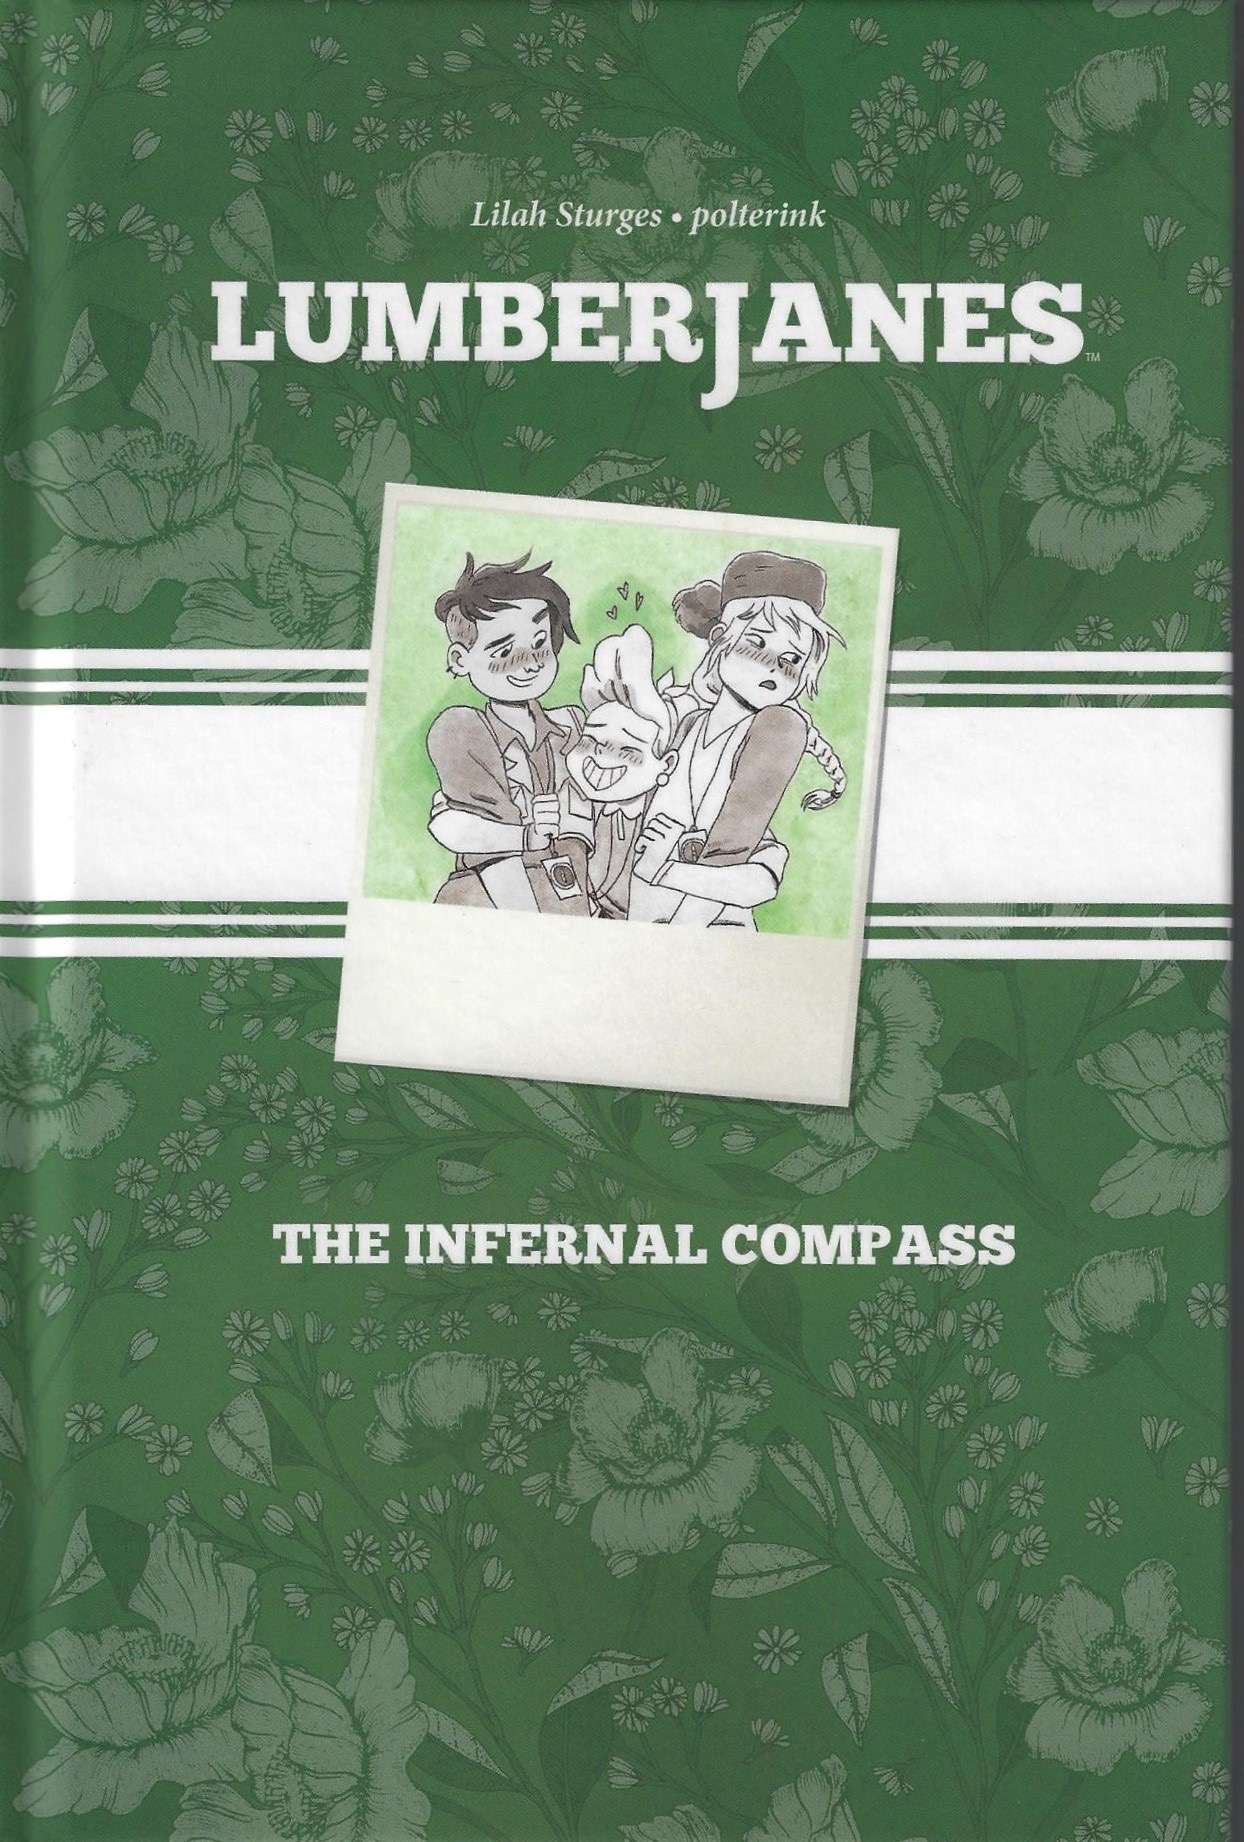 Lumberjanes CBLDF exclusive,